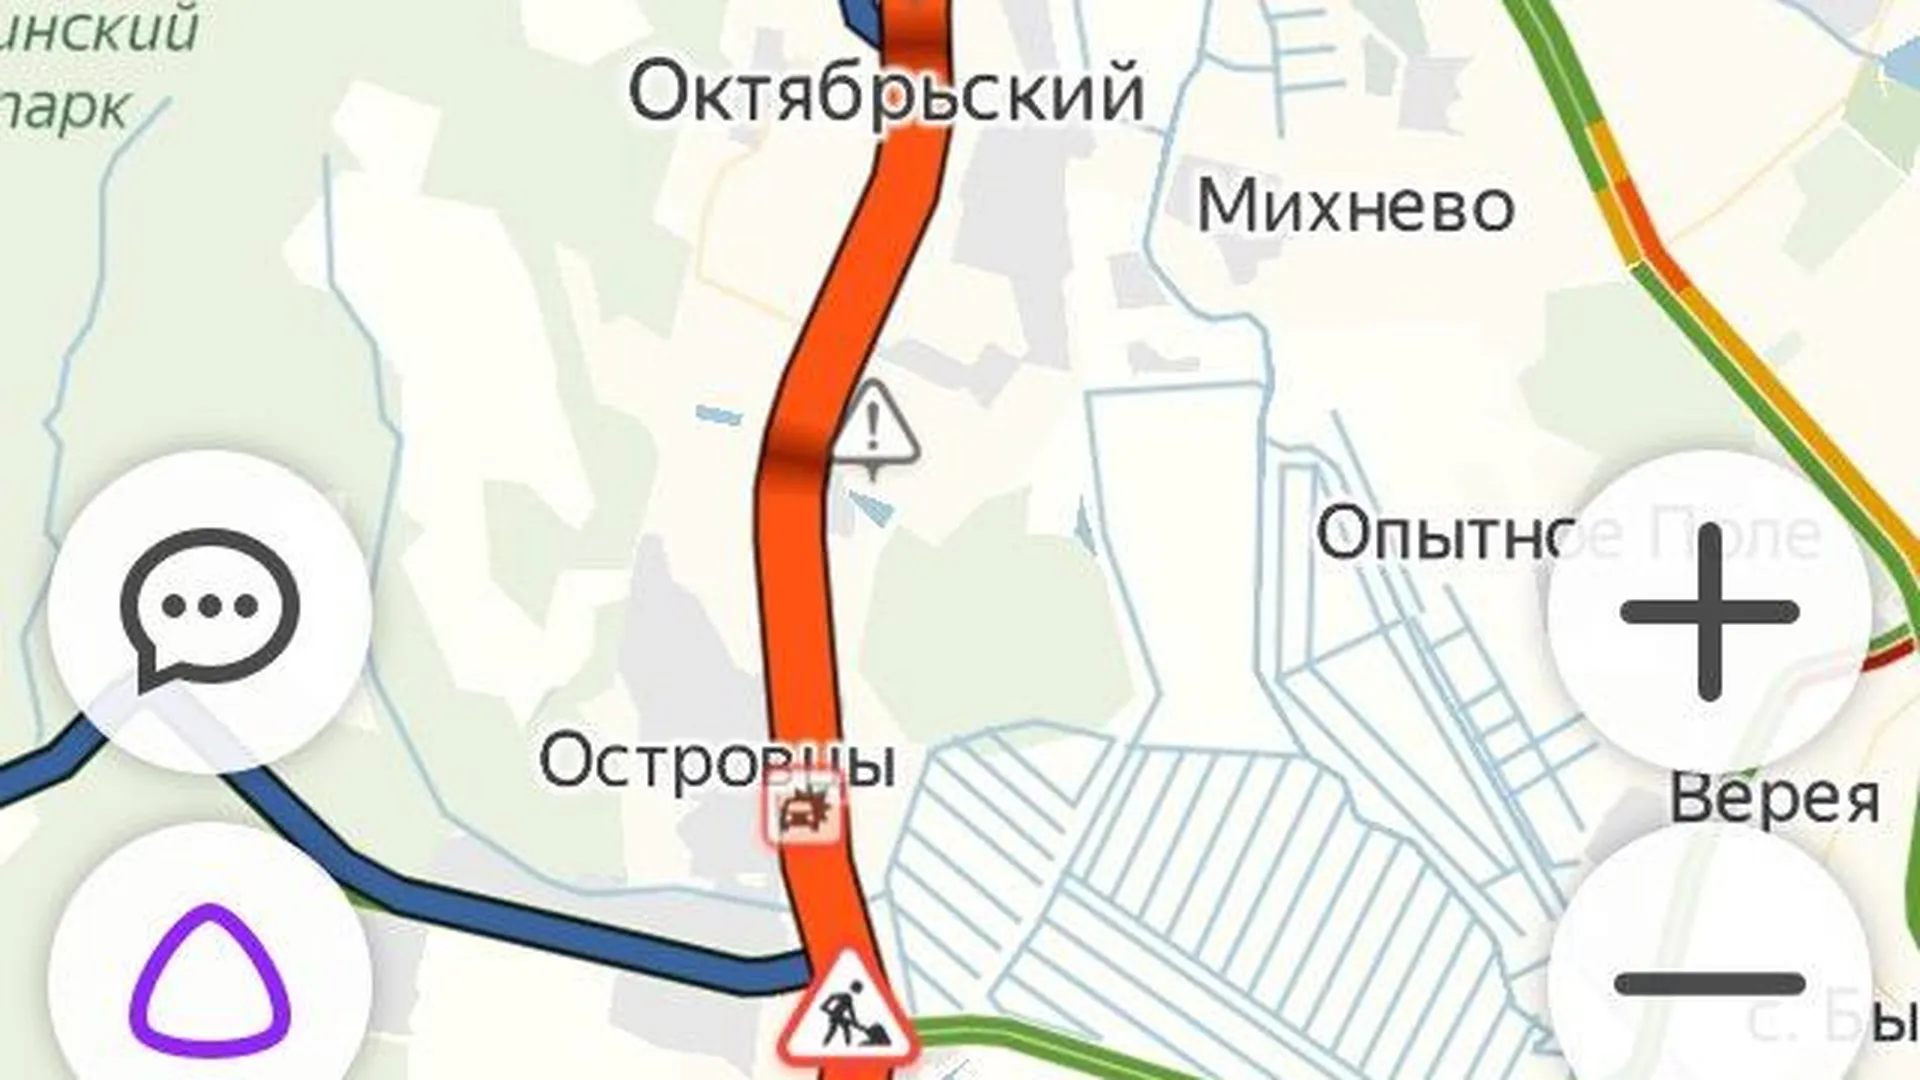 сообщество «Новорязанское шоссе М5» в соцсети ВКонтакте, автор Jimmy Gustavo